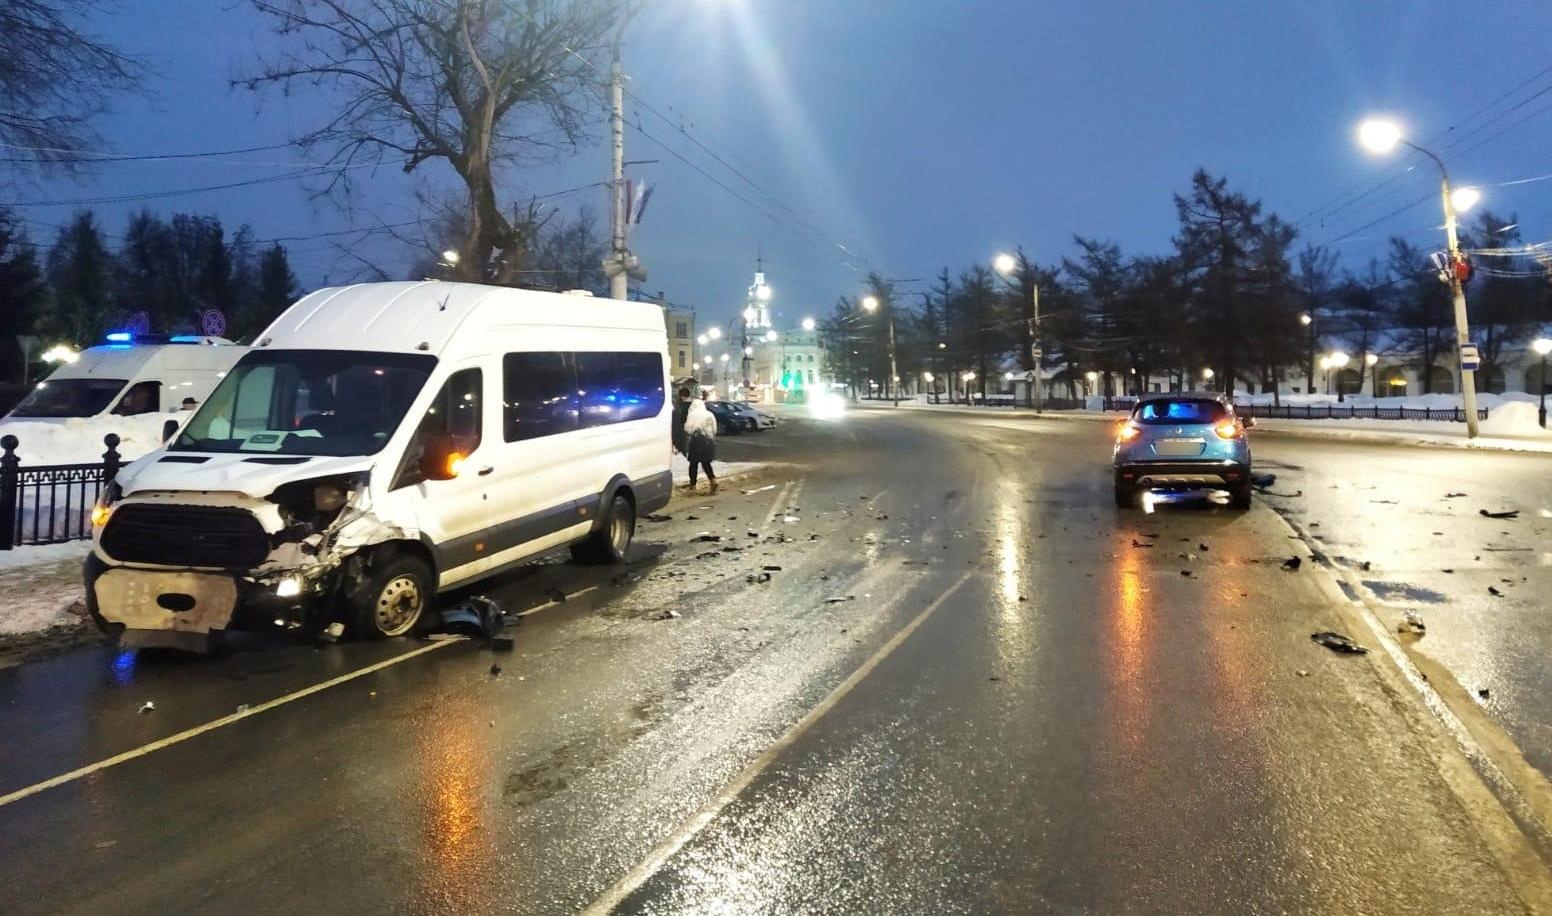 8 пассажиров маршрутки пострадали в жесткой аварии в Костроме